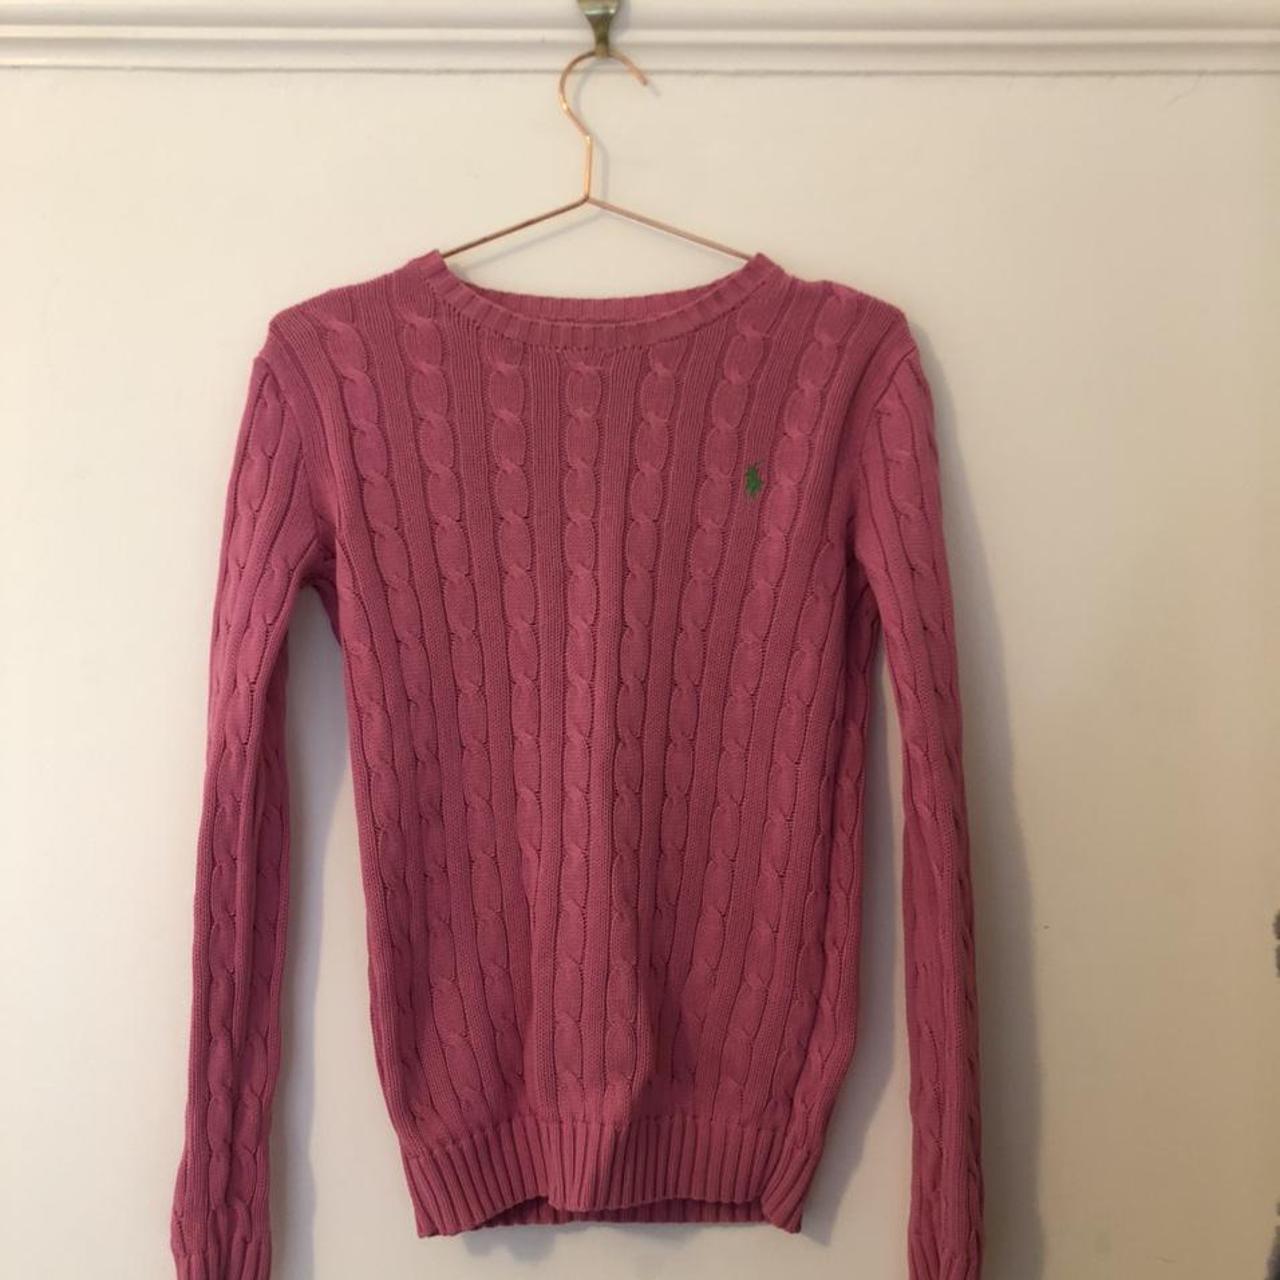 pink ralph lauren knitted jumper. Size small.... - Depop